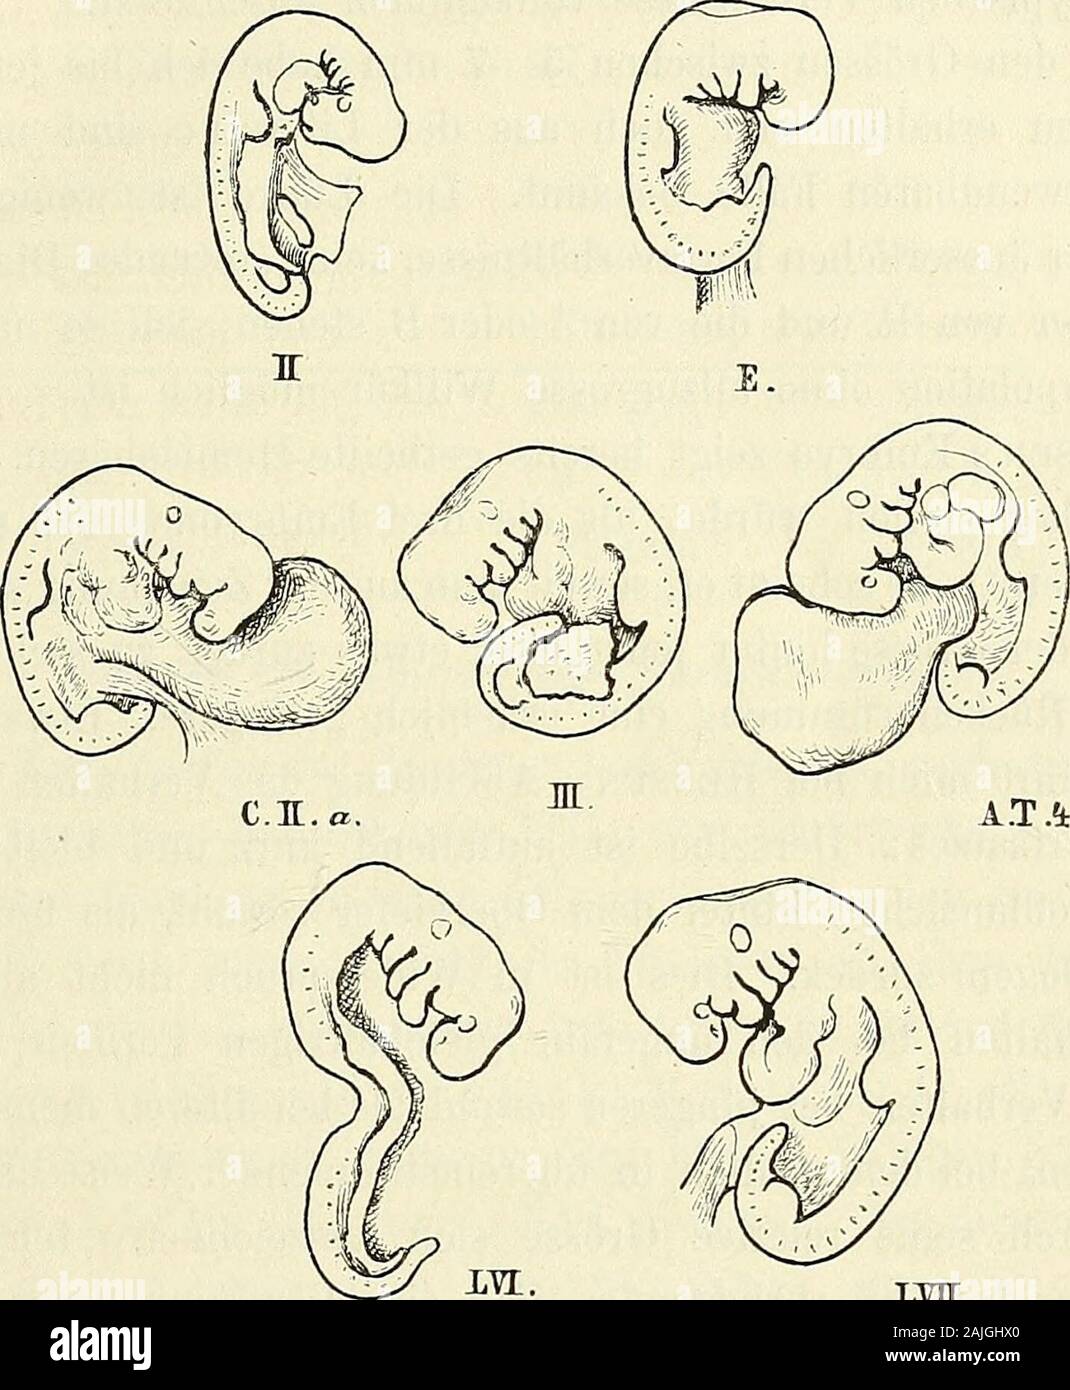 Anatomie menschlicher Embryonen . hleife ist bereits caudalwärts gerichtet. Die Nabelblase istzwar un ihrer Wurzel, indess eingeschnürt noch en breiter Verbin-bindung mit dem Körper. Eine Leberanschwellung ist vorhanden,aber schwach hervortretend. Etwas älter als die drei eben besprochenen Sind die Embryonen 1) von und Hensen Ecker liegen directe Maassangaben (4 bez. 4,5 mm),vom embrión 4 von allen Thomson eine lange Figur 4 mm en natürlicherGrösse vor. Embrión, angeblich der CosTssche 15mal cmlang vergrössert, ist auch vfas de 6, 4 mm natürliche Länge ergeben würde. Man kann sich aufdie CosTEschen Foto de stock